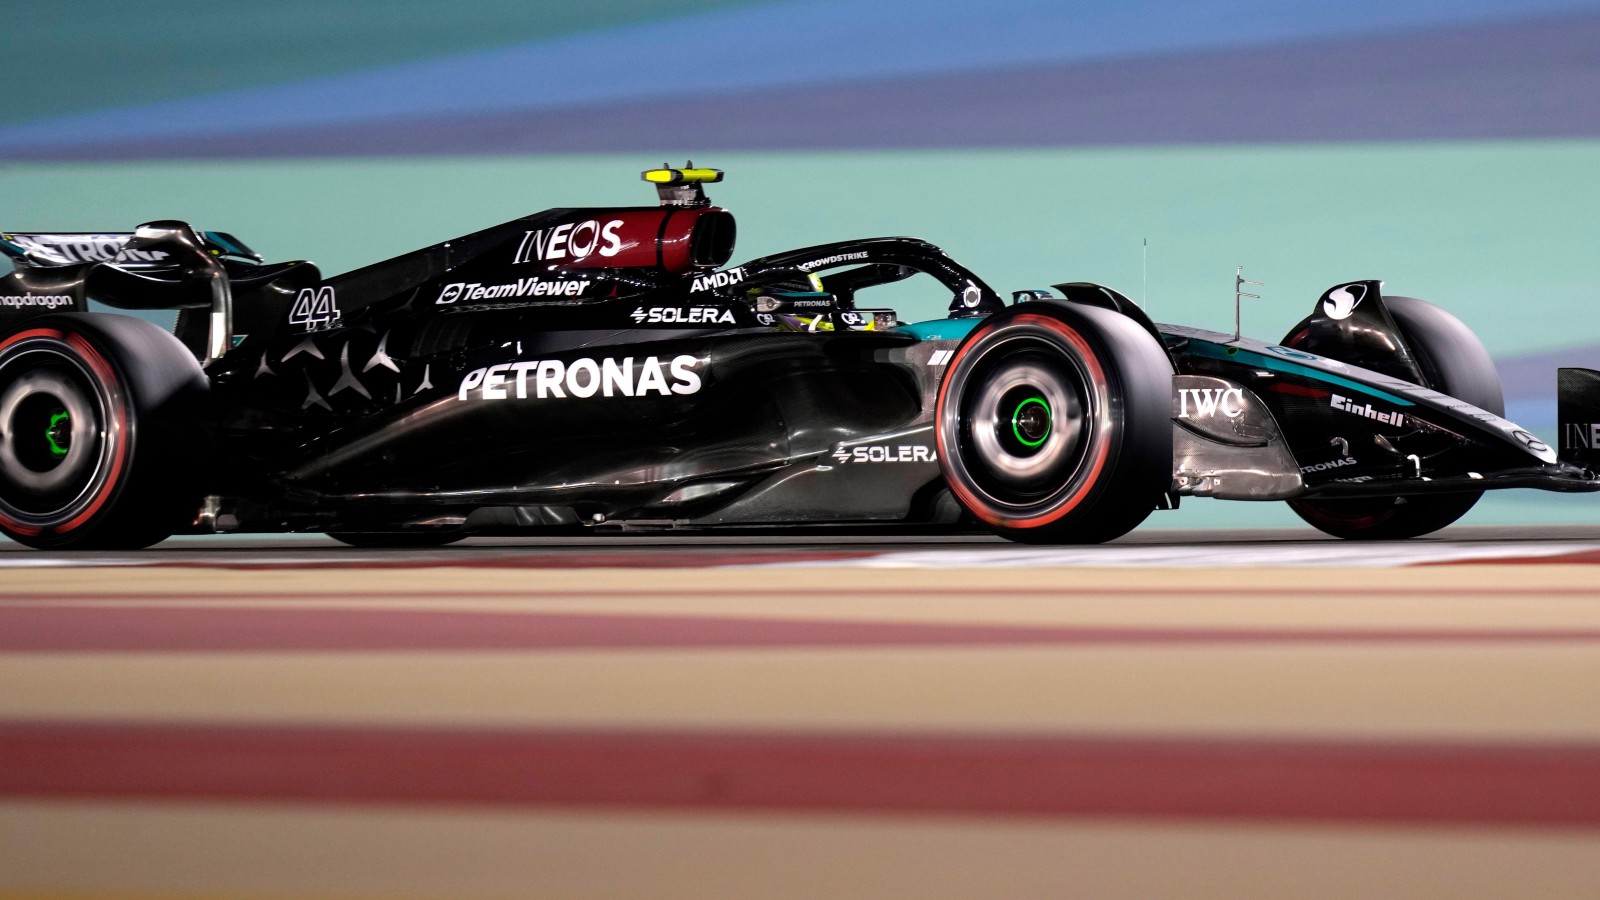 Bahrain Grand Prix: Lewis Hamilton heads Mercedes FP2 1-2, Max